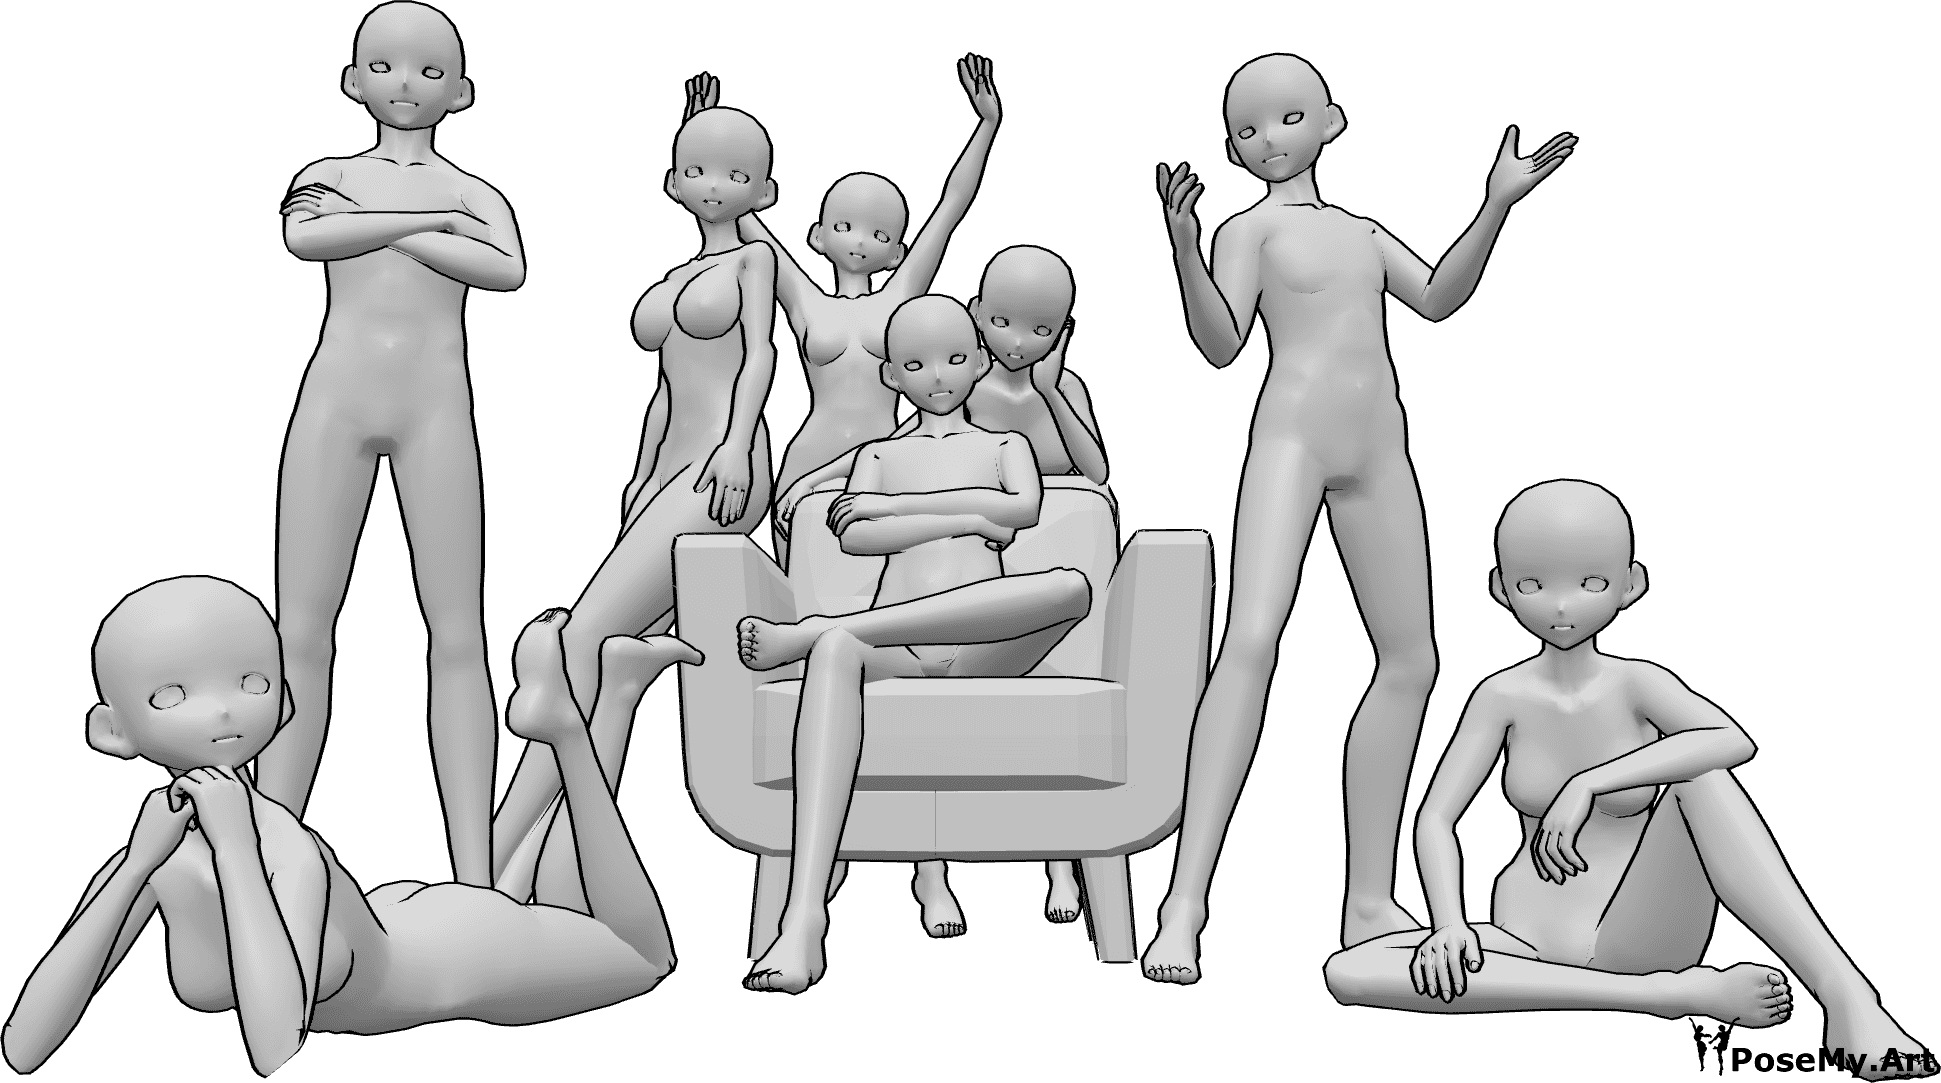 Referência de poses- Pose para fotografia de grupo de anime - Grupo de oito anime do sexo feminino e masculino a posar para uma fotografia de grupo amigável, sentados e de pé